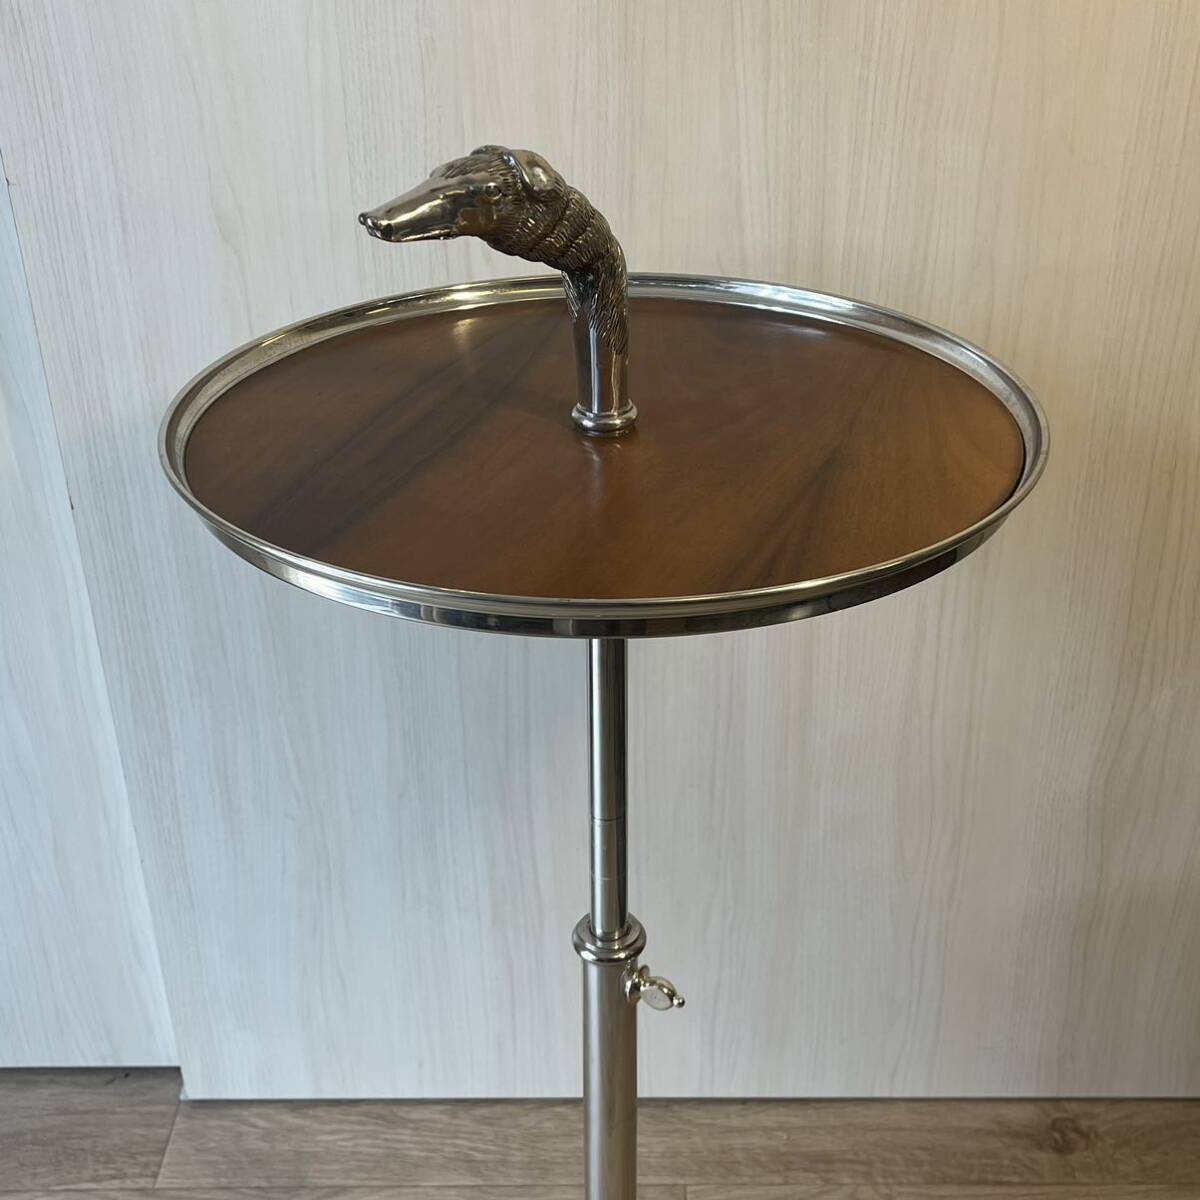  высококлассный товар barosa барен ti боковой стол подниматься и опускаться стенд для вазы Испания мебель дисплей шт. ( поиск Arflex рубец ti Vintage 